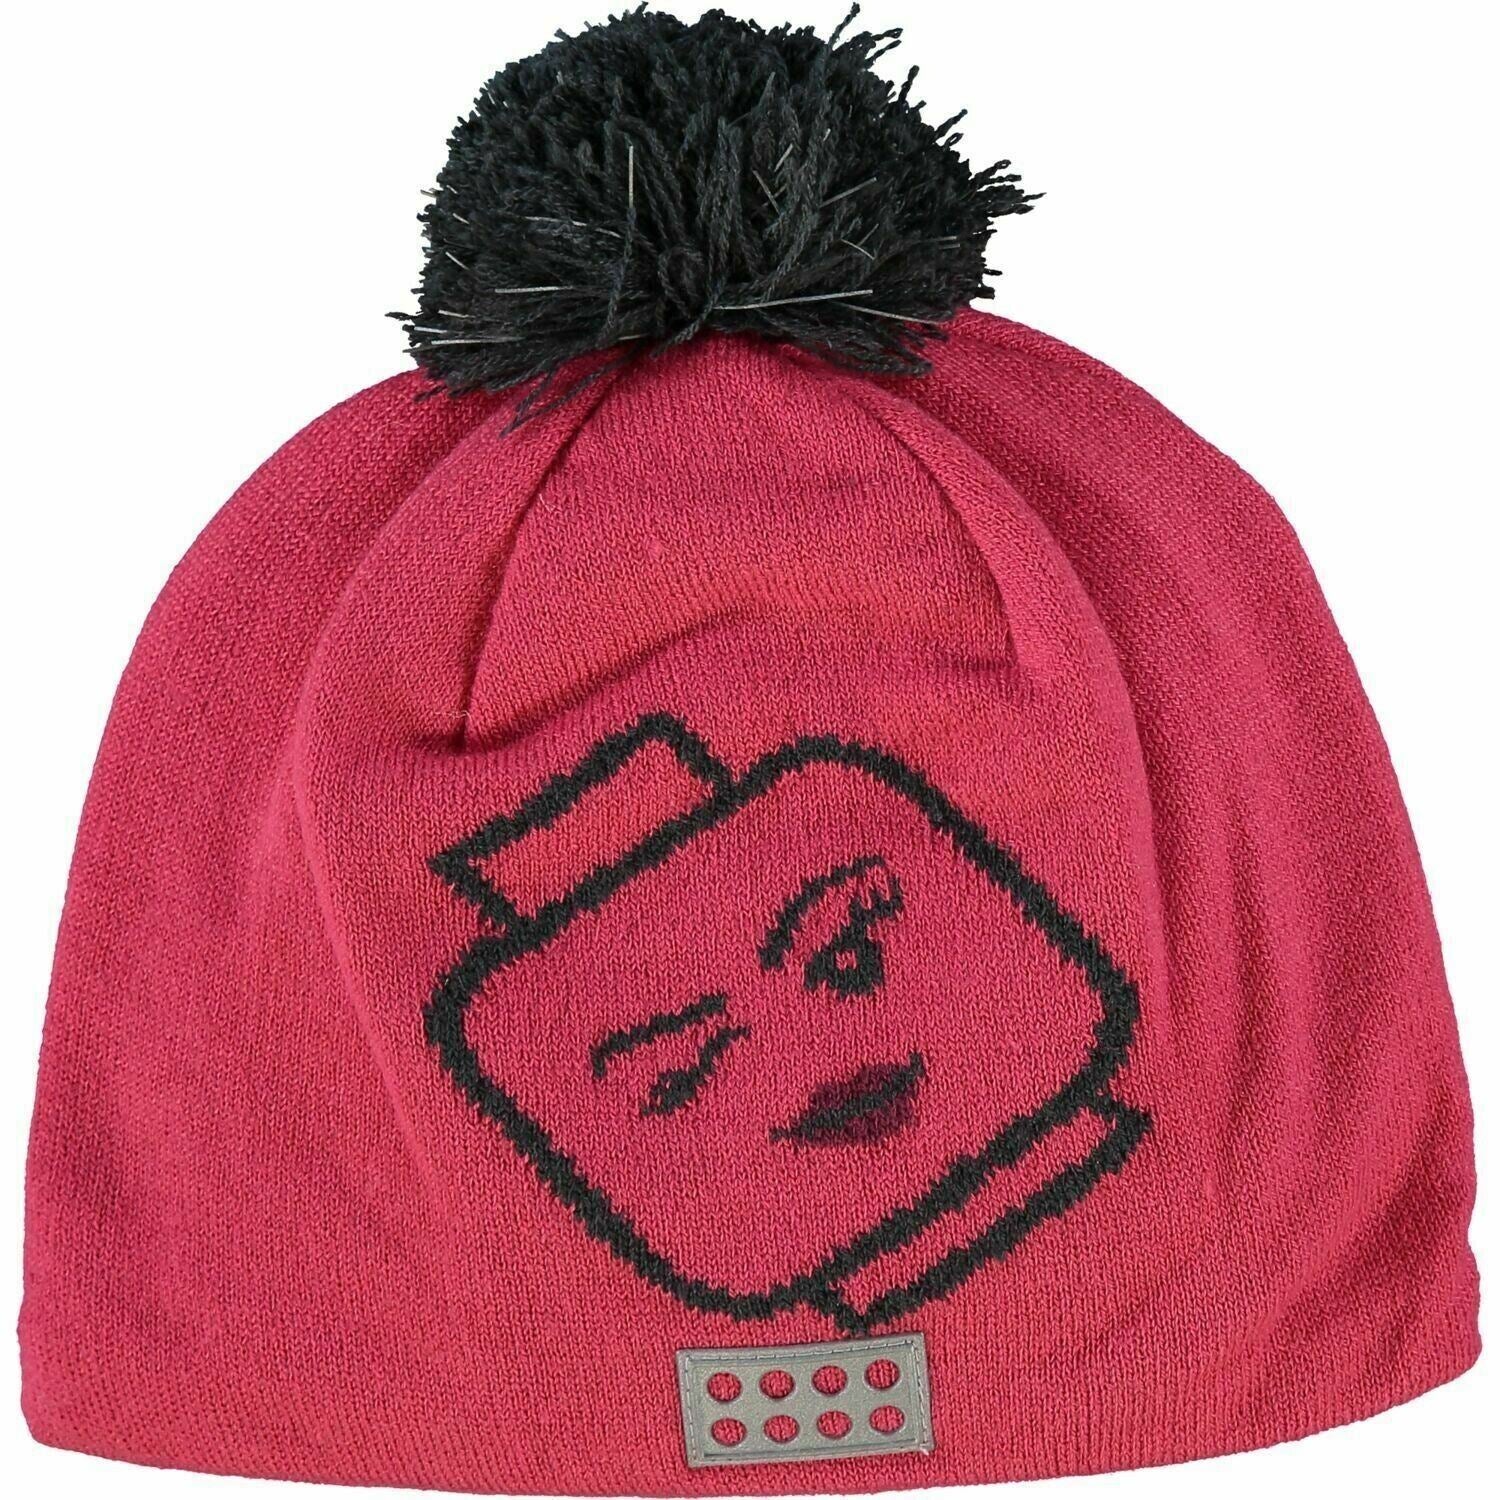 LEGOWEAR - AGATA Girls' Kids' Pom Pom Beanie Hat, Pink size 4-7 years